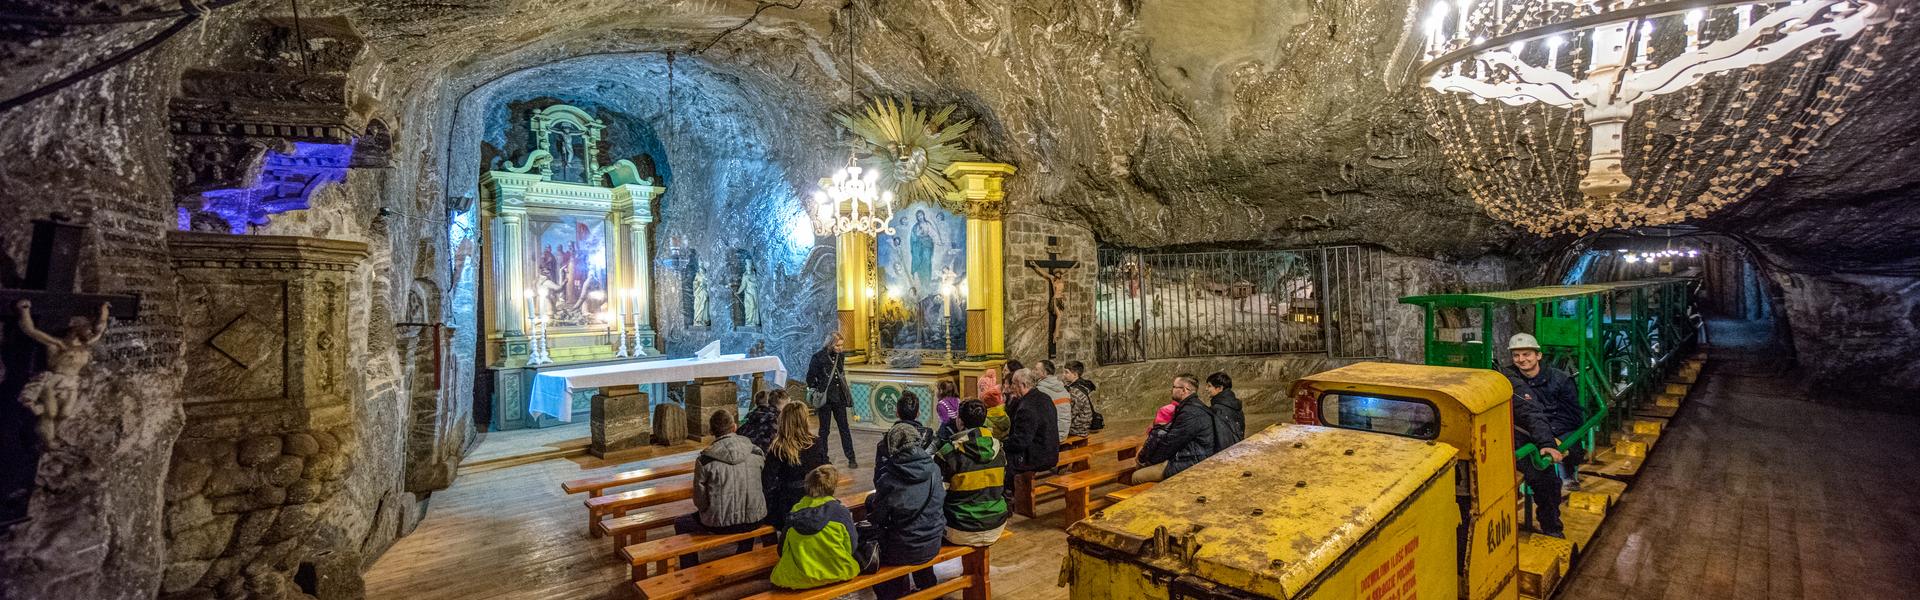 Kaplica świętej Kingi, turyści słuchający opowieści przewodnika oraz podziemna kolejka w Kopalni soli w Bochni